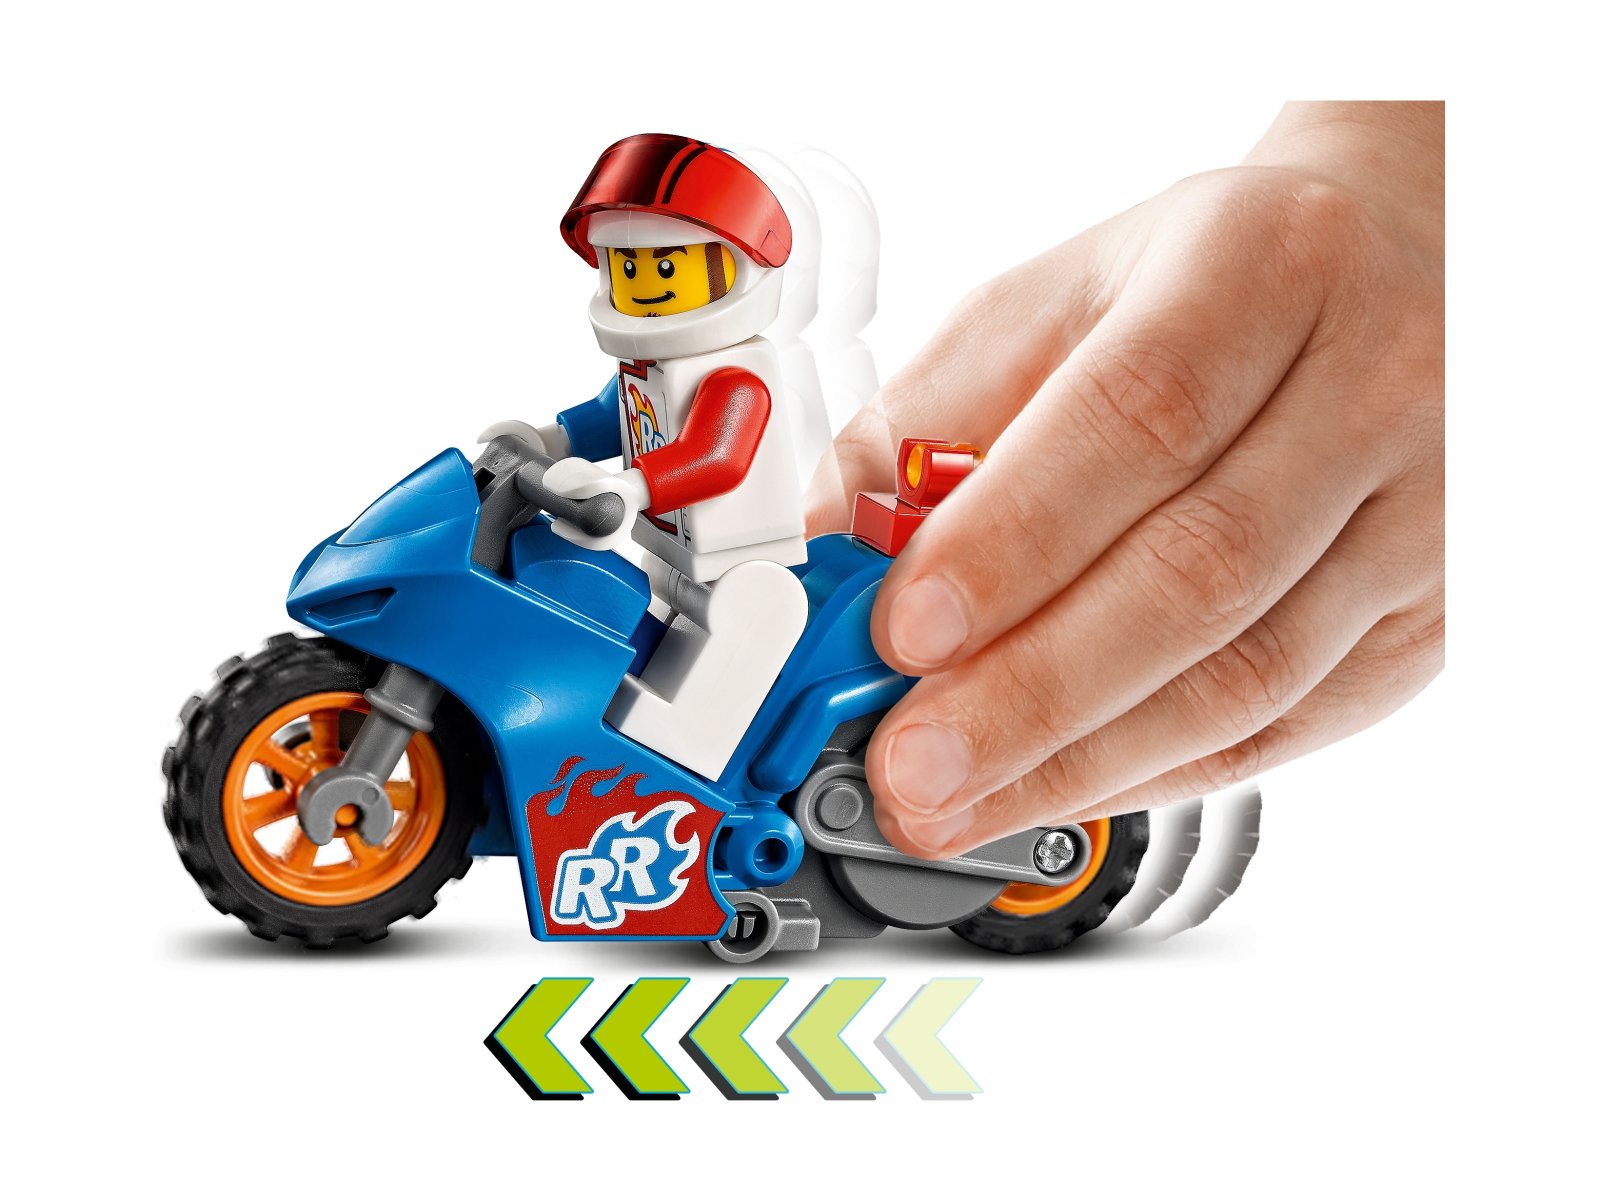 LEGO 60298 Rakietowy motocykl kaskaderski